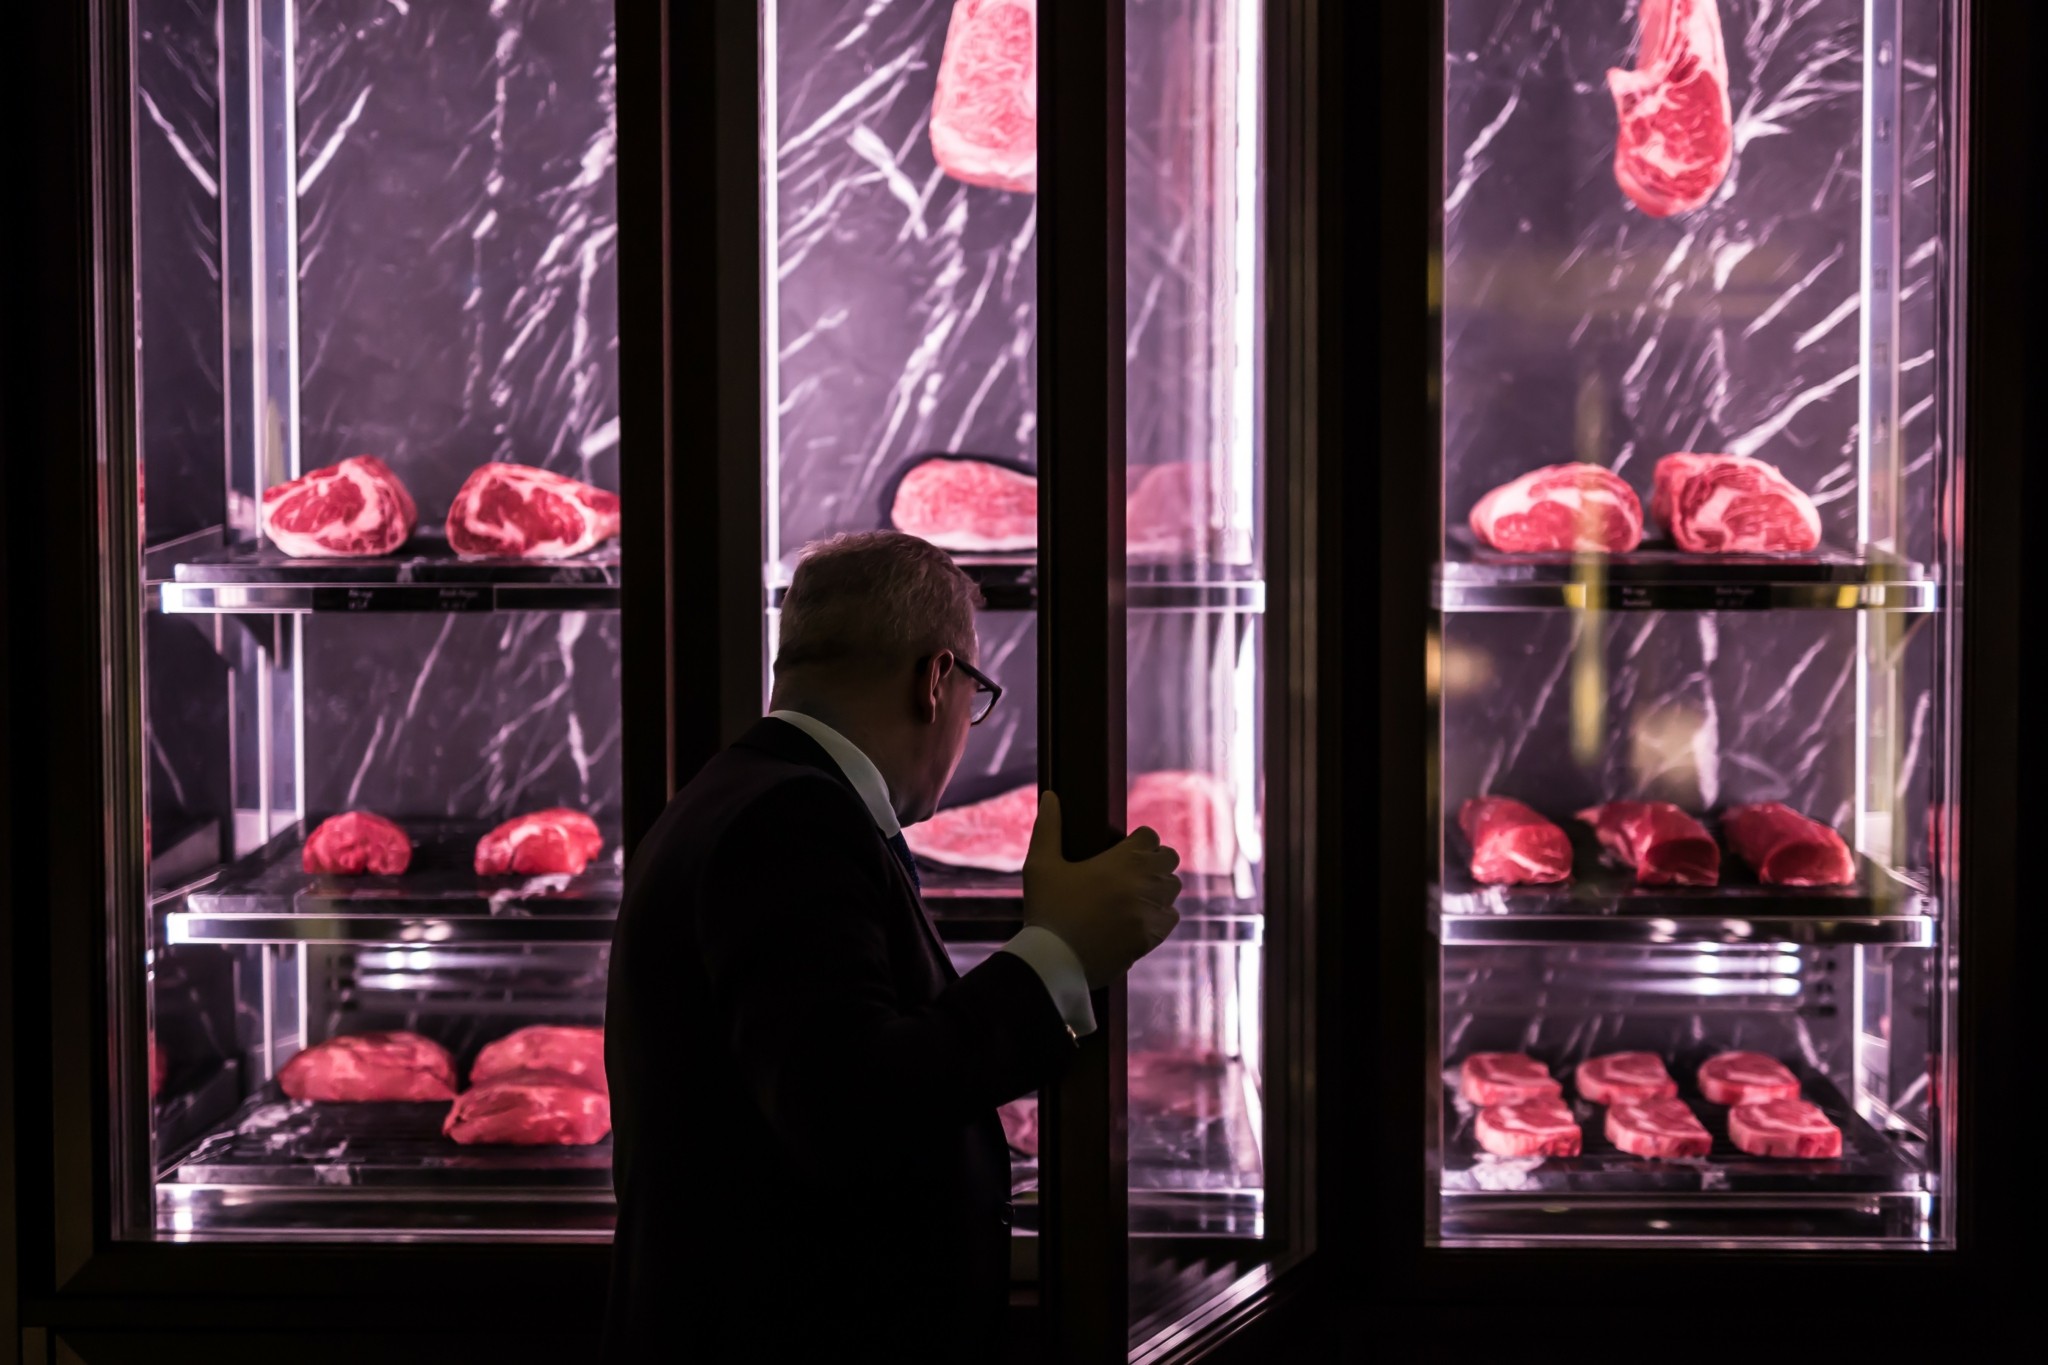 La Meat Maison και Beefbar – Κηφισιά εναντίον Βουλιαγμένης: Δύο επικά steaks της Αθήνας και τα μυστικά τους